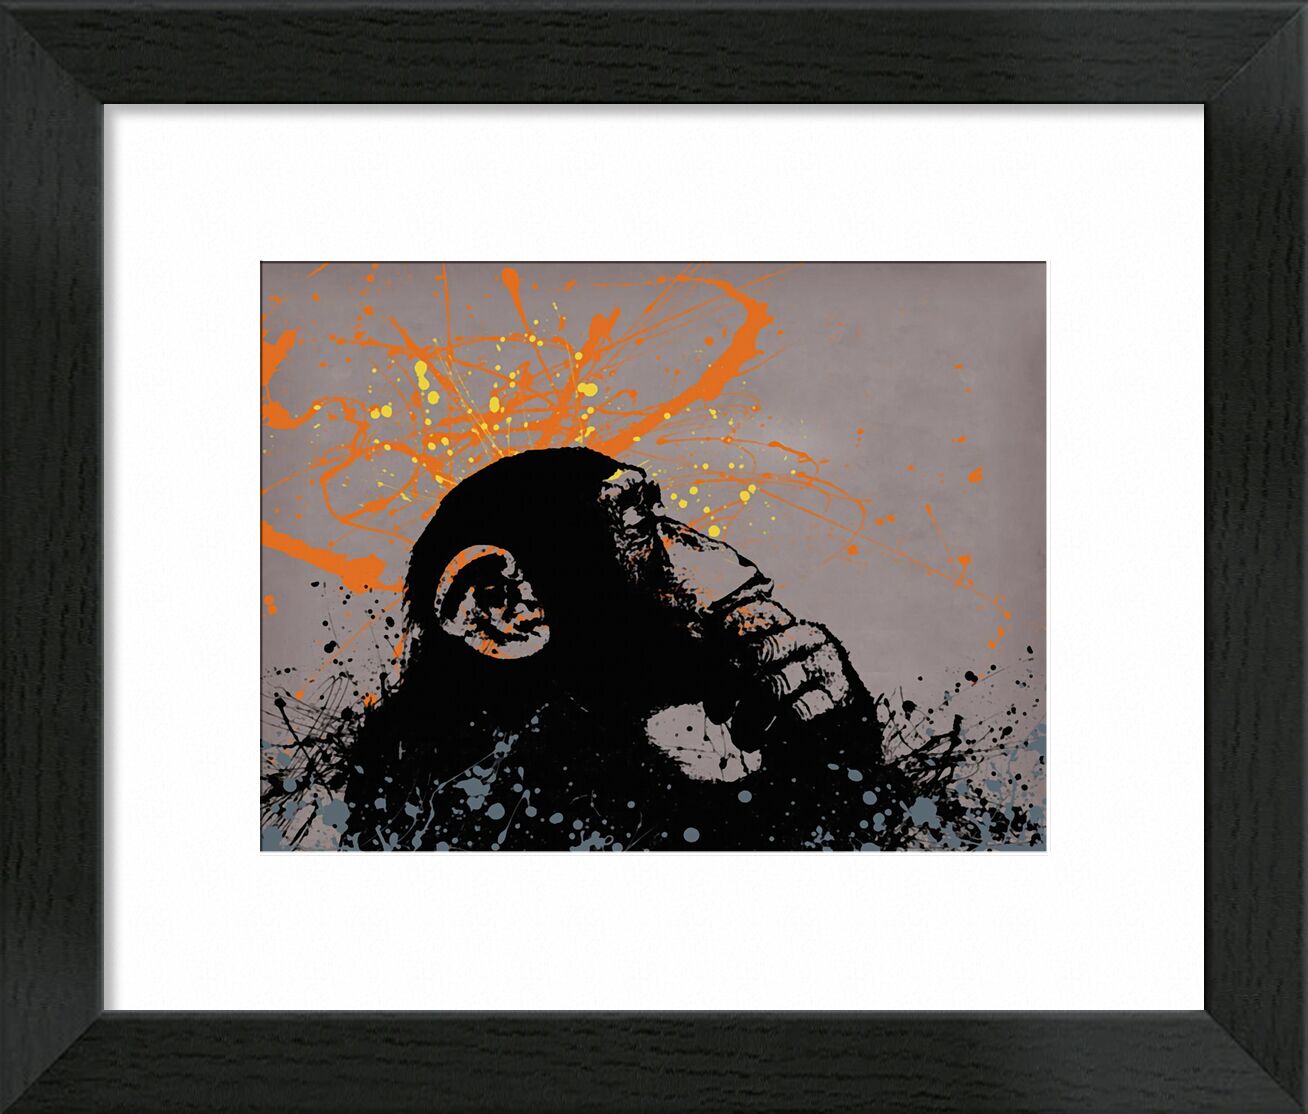 Thinker monkey von Bildende Kunst, Prodi Art, Grafik, Affe, banksy, Graffiti, Straßenkunst